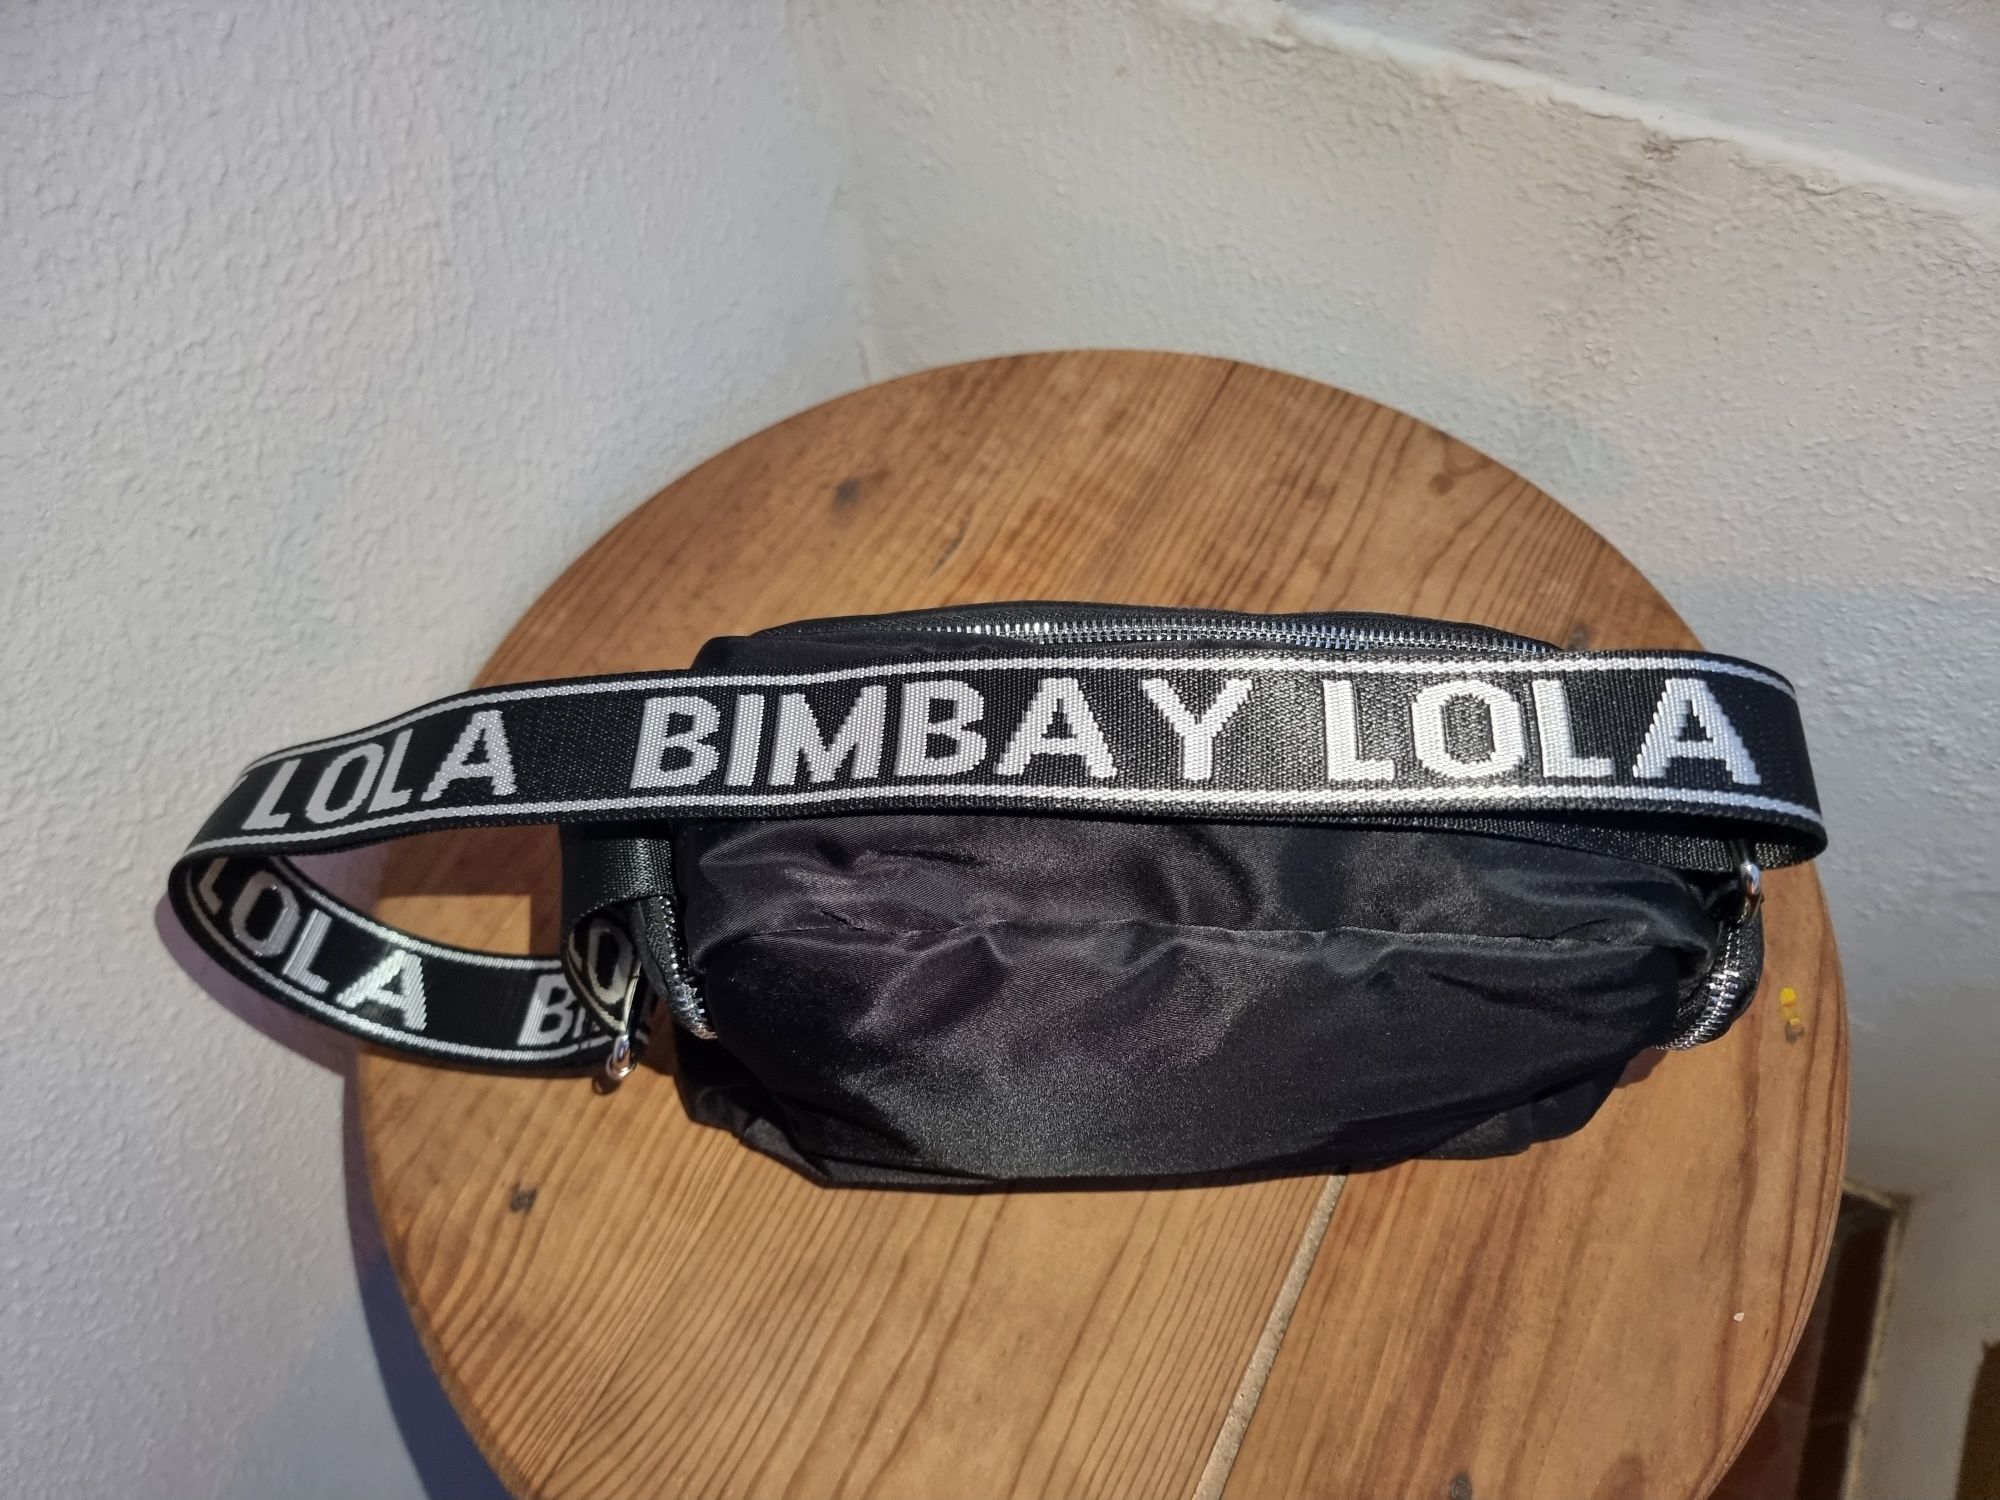 Mala Bimba y Lola nova original